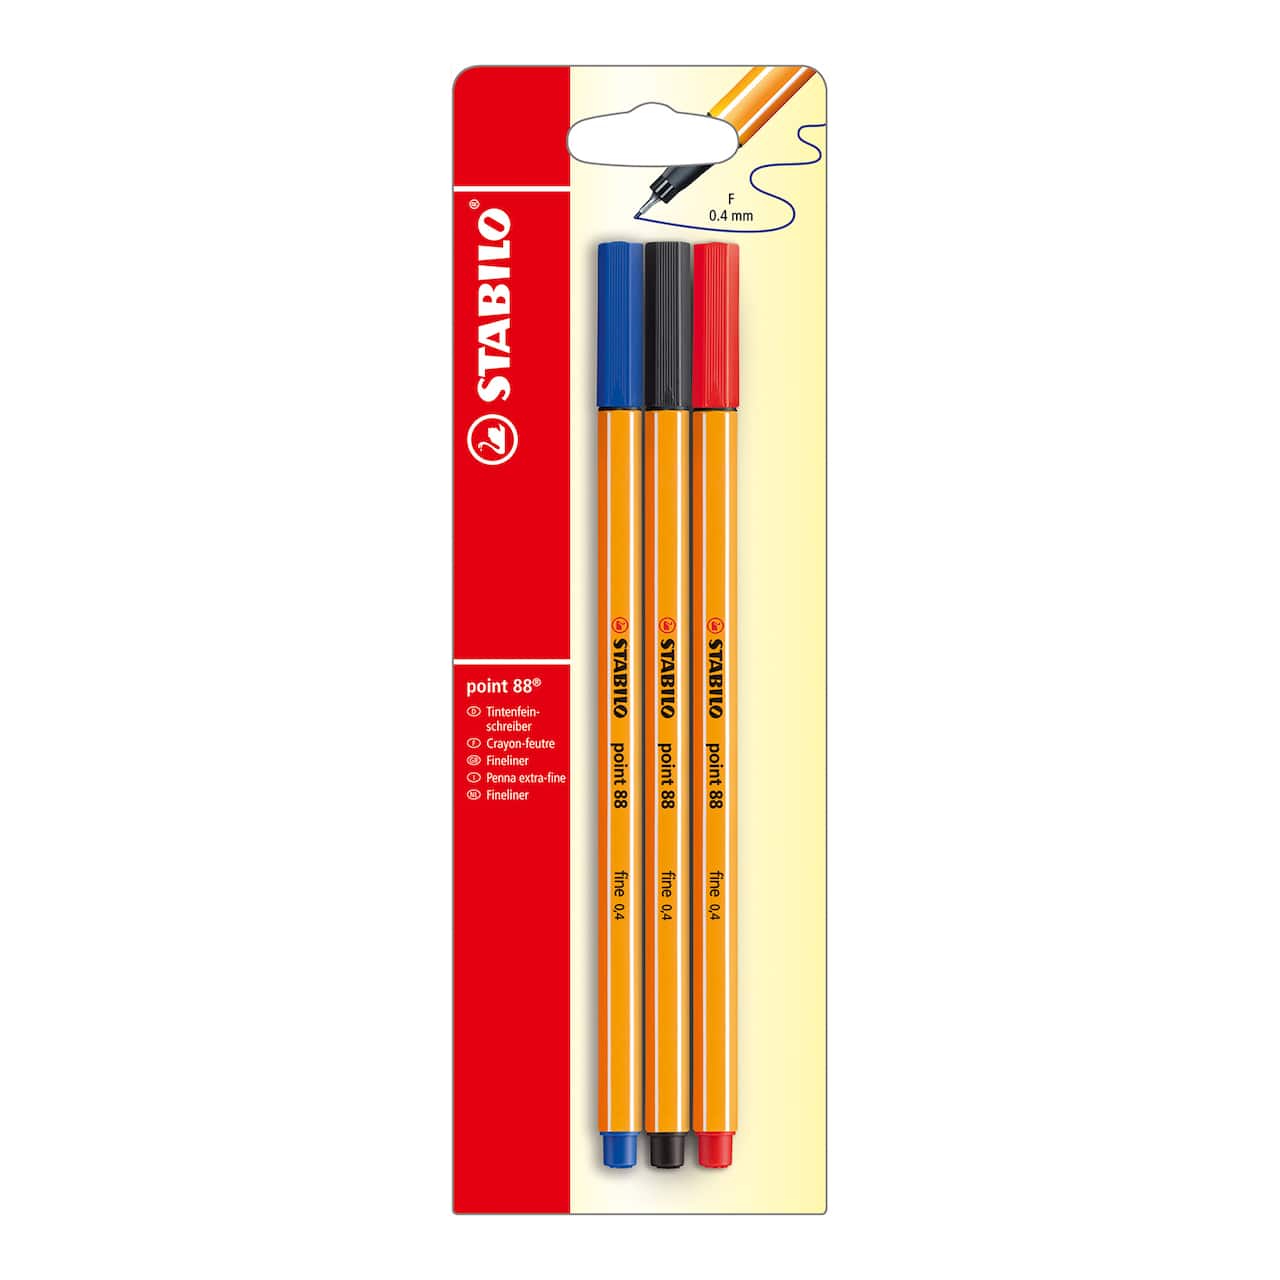 Stabilo&#xAE; Point 88 3 Color Pen Set